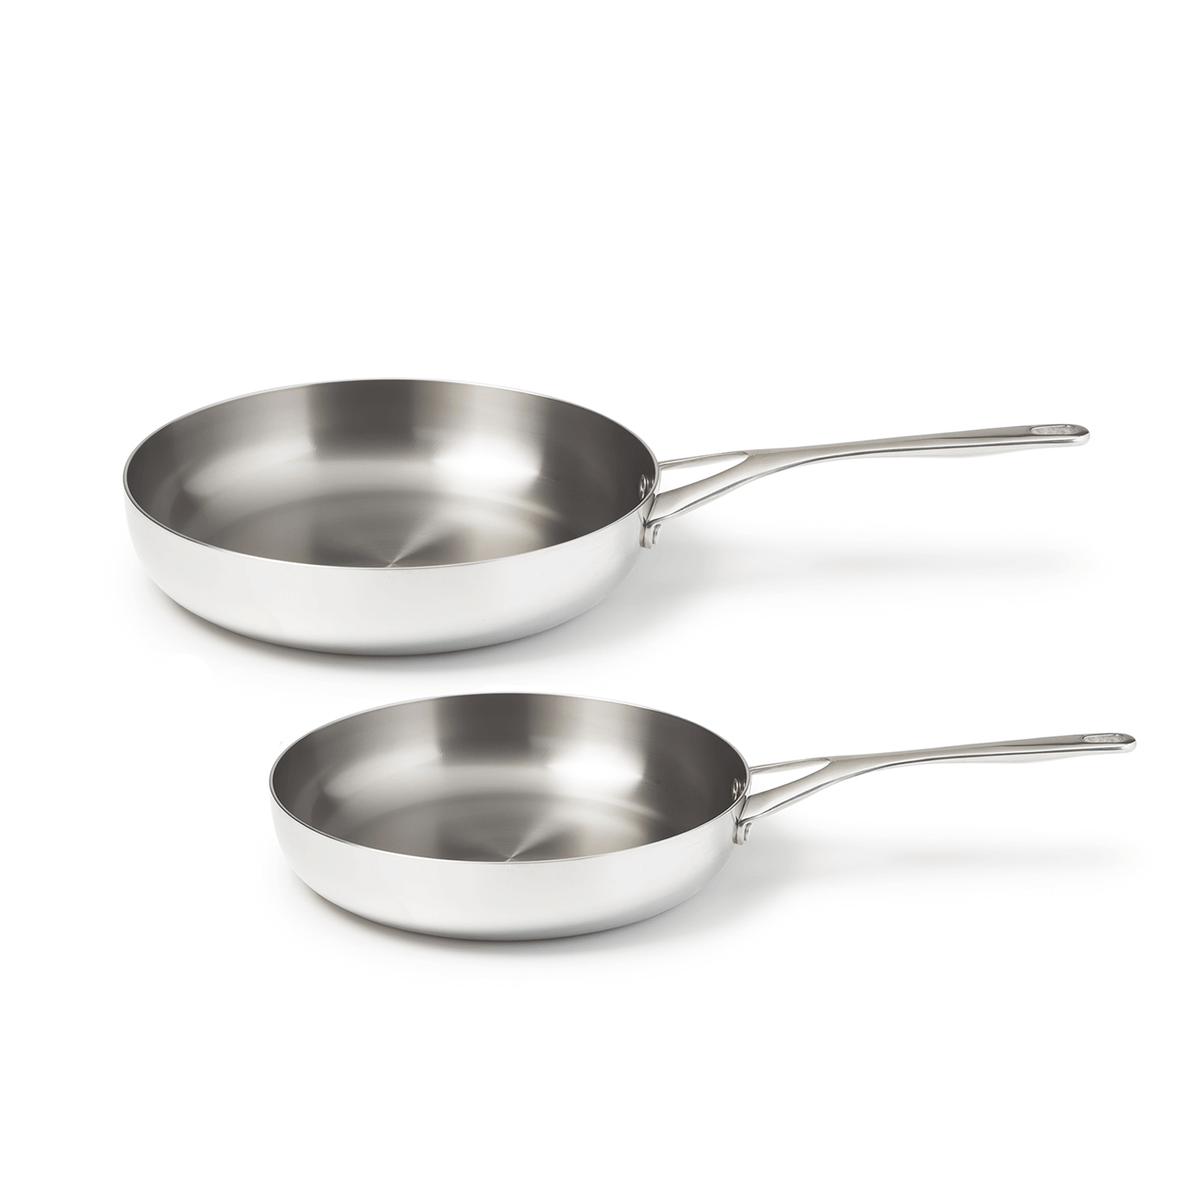 TeChef - Art Pan 11 Frying Pan with lid, Coated 5x with Teflon